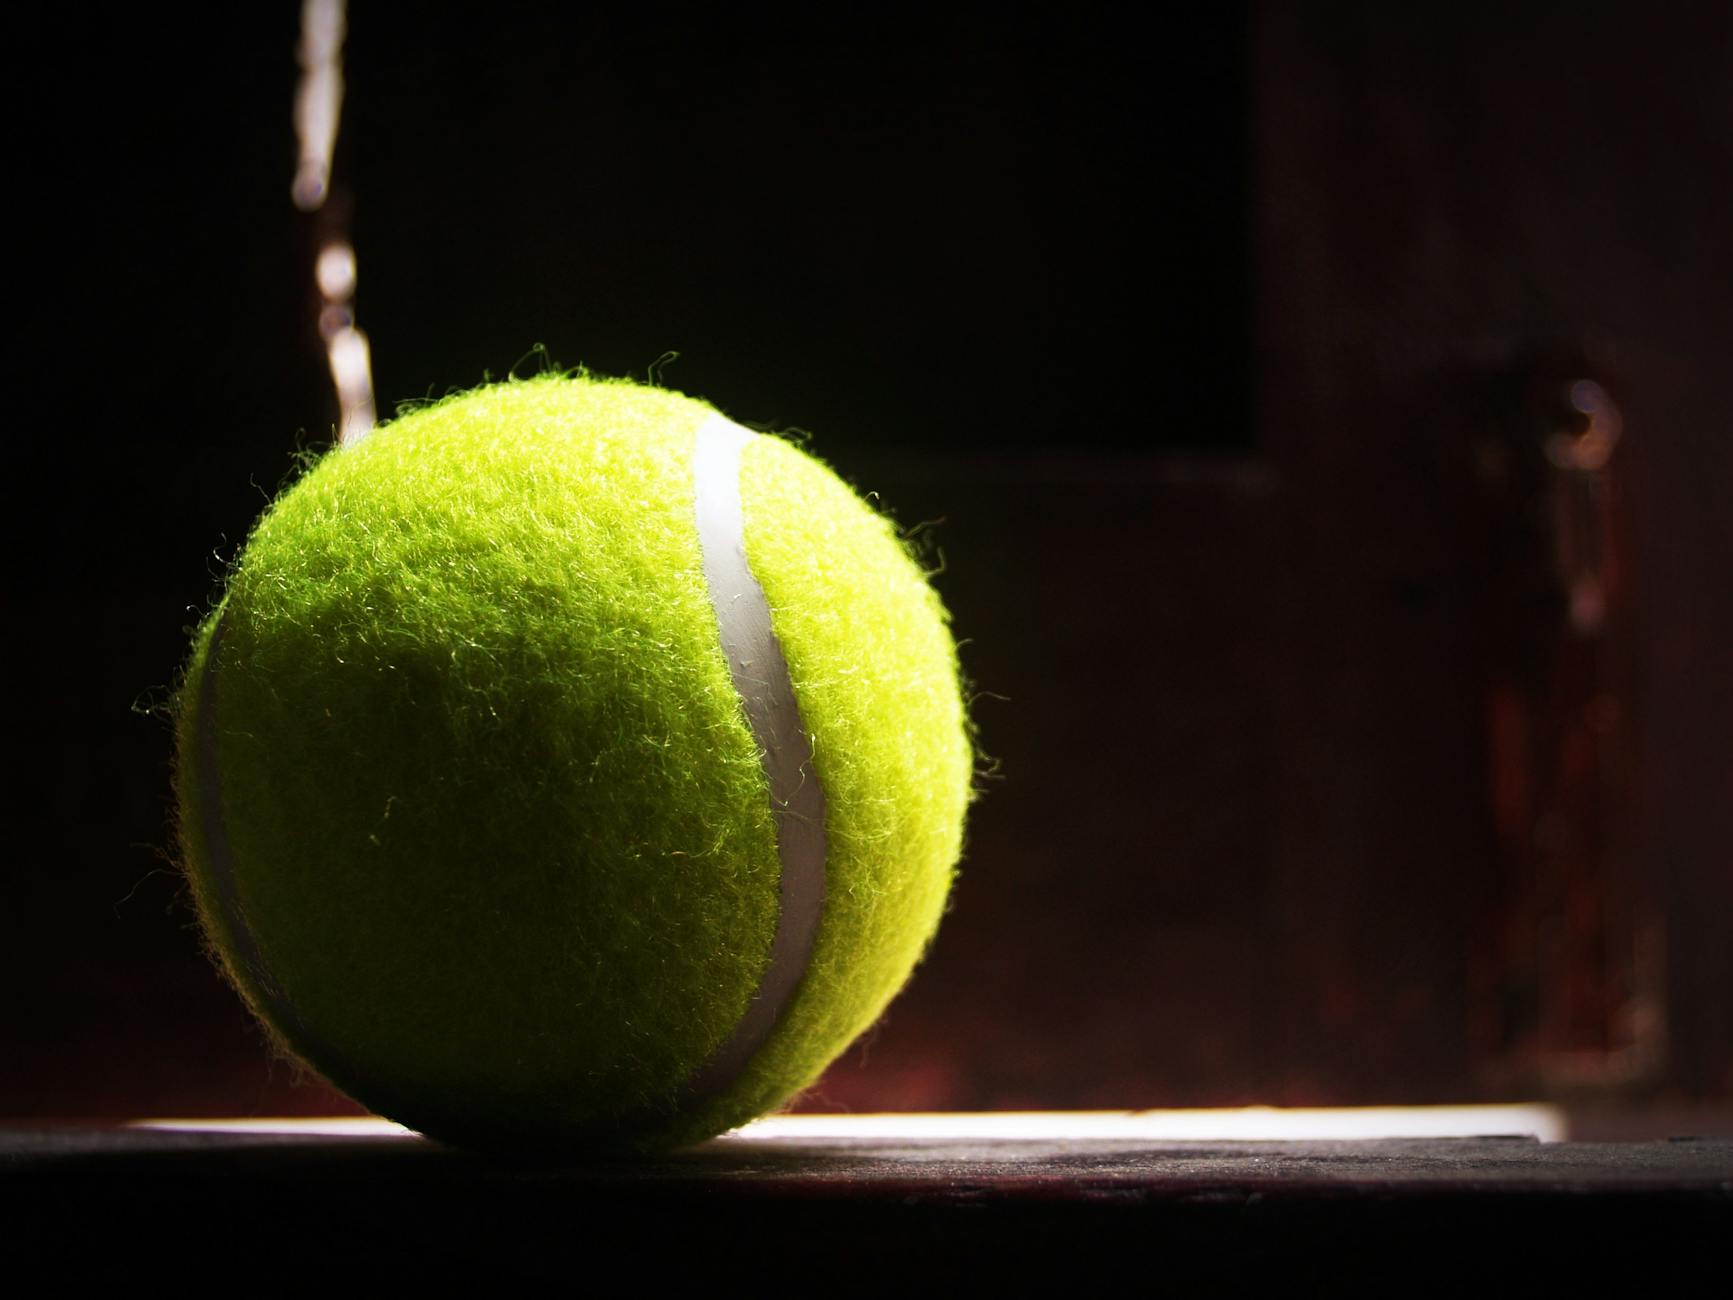 green lawn tennis ball